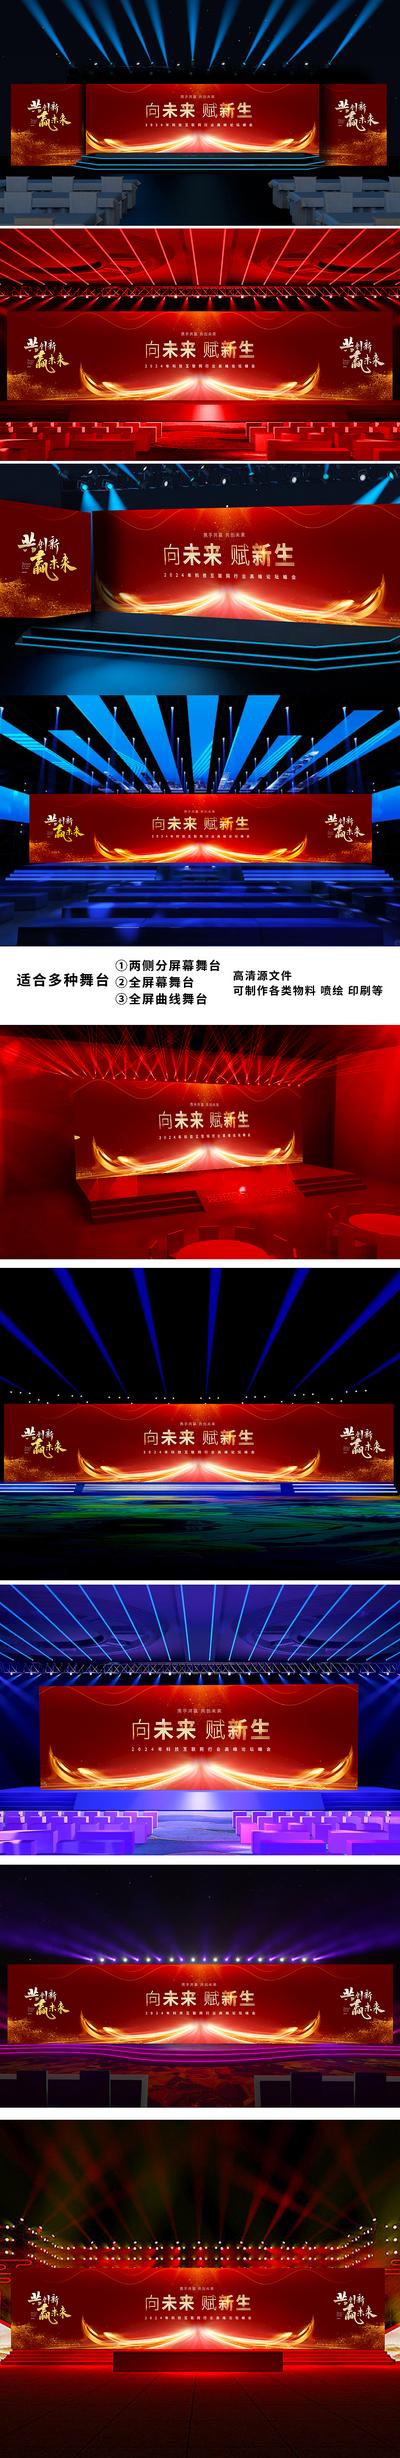 南门网 广告 海报 展板 会议 年会 典礼 仪式 峰会 论坛 大气 舞台 效果图 样机